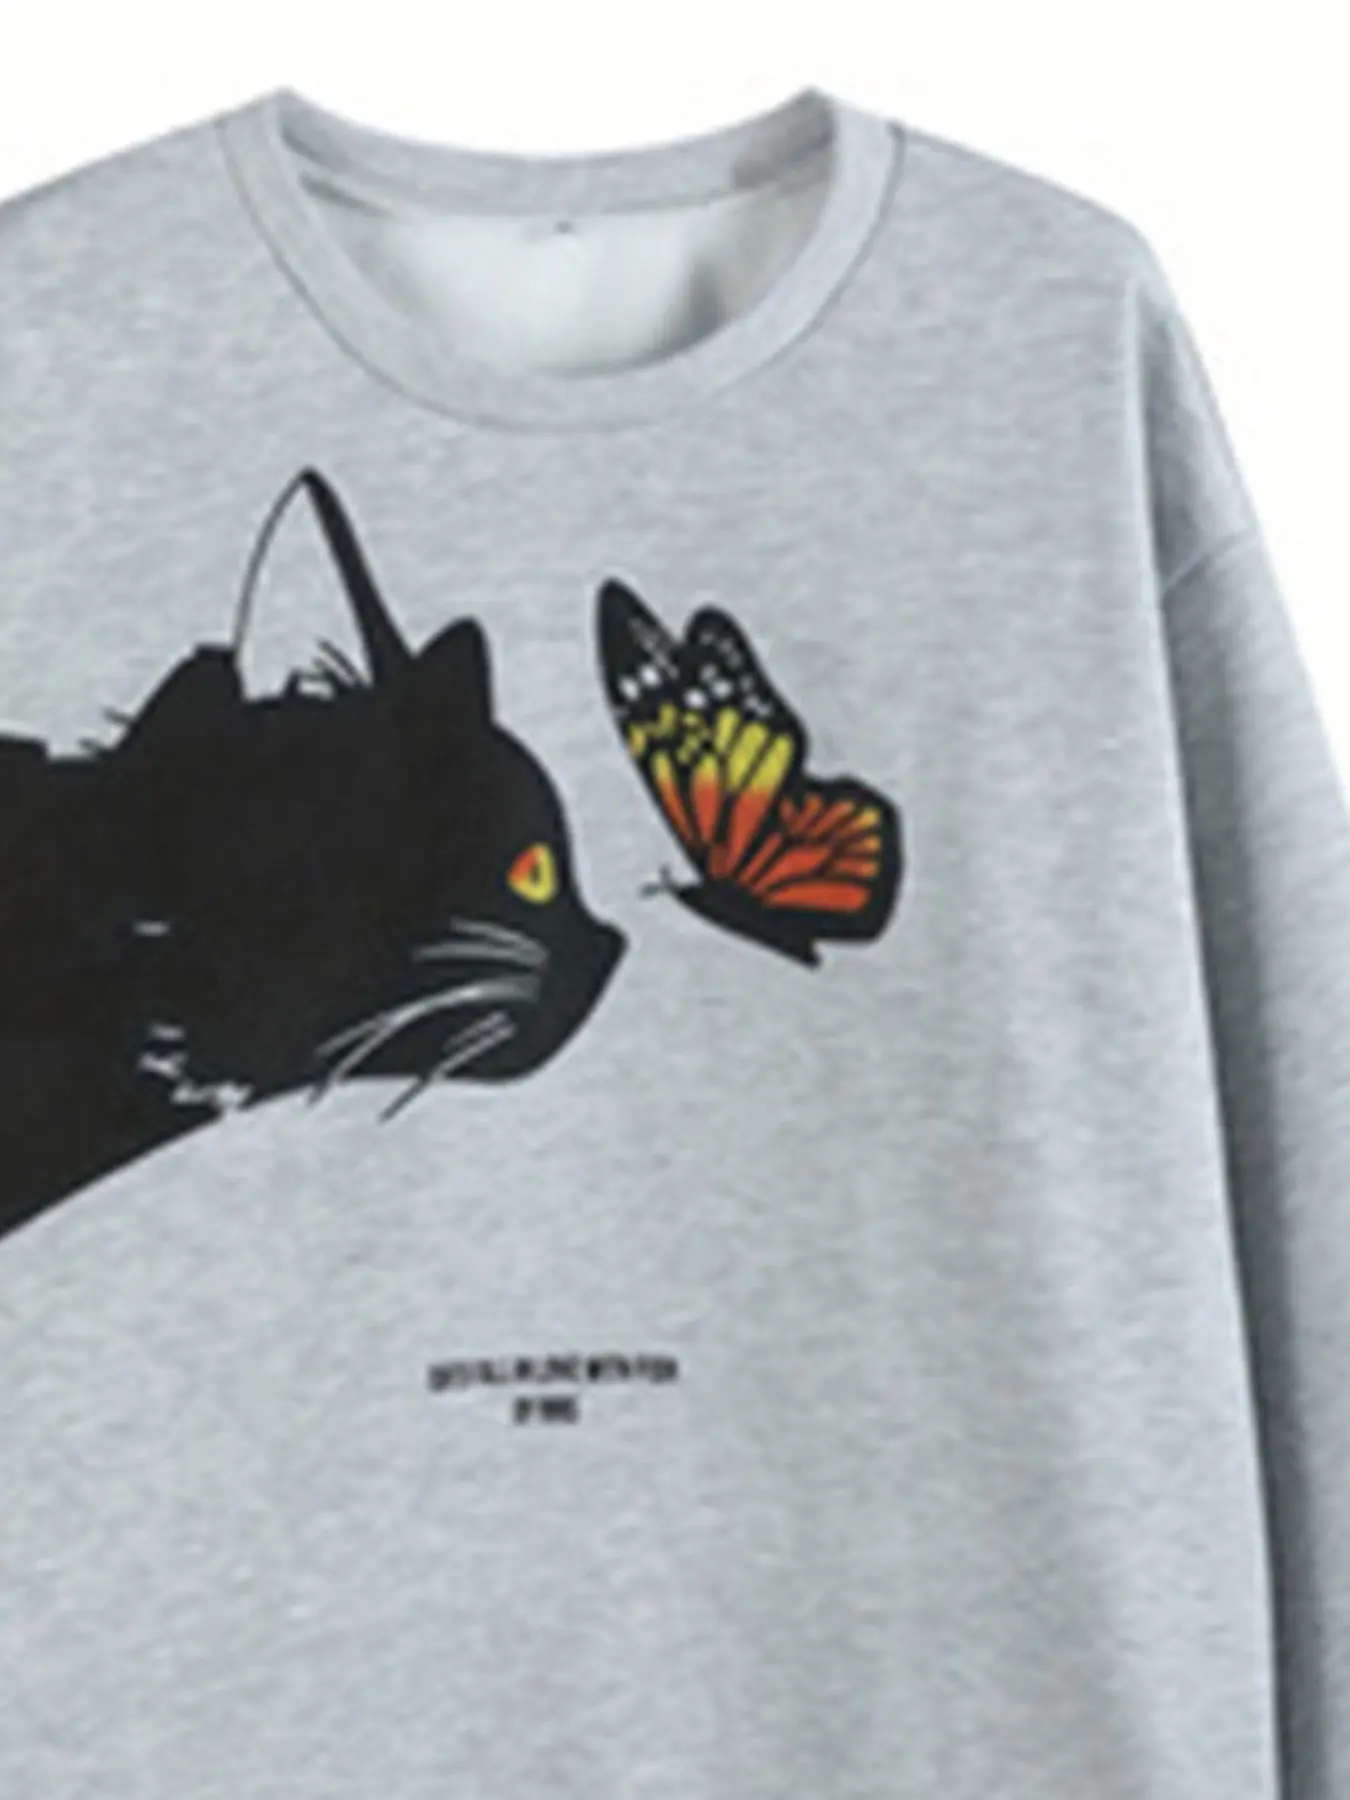 Camisola de manga comprida com gola redonda feminina, com estampa carta e gato e borboleta, tamanho positivo, camisola casual